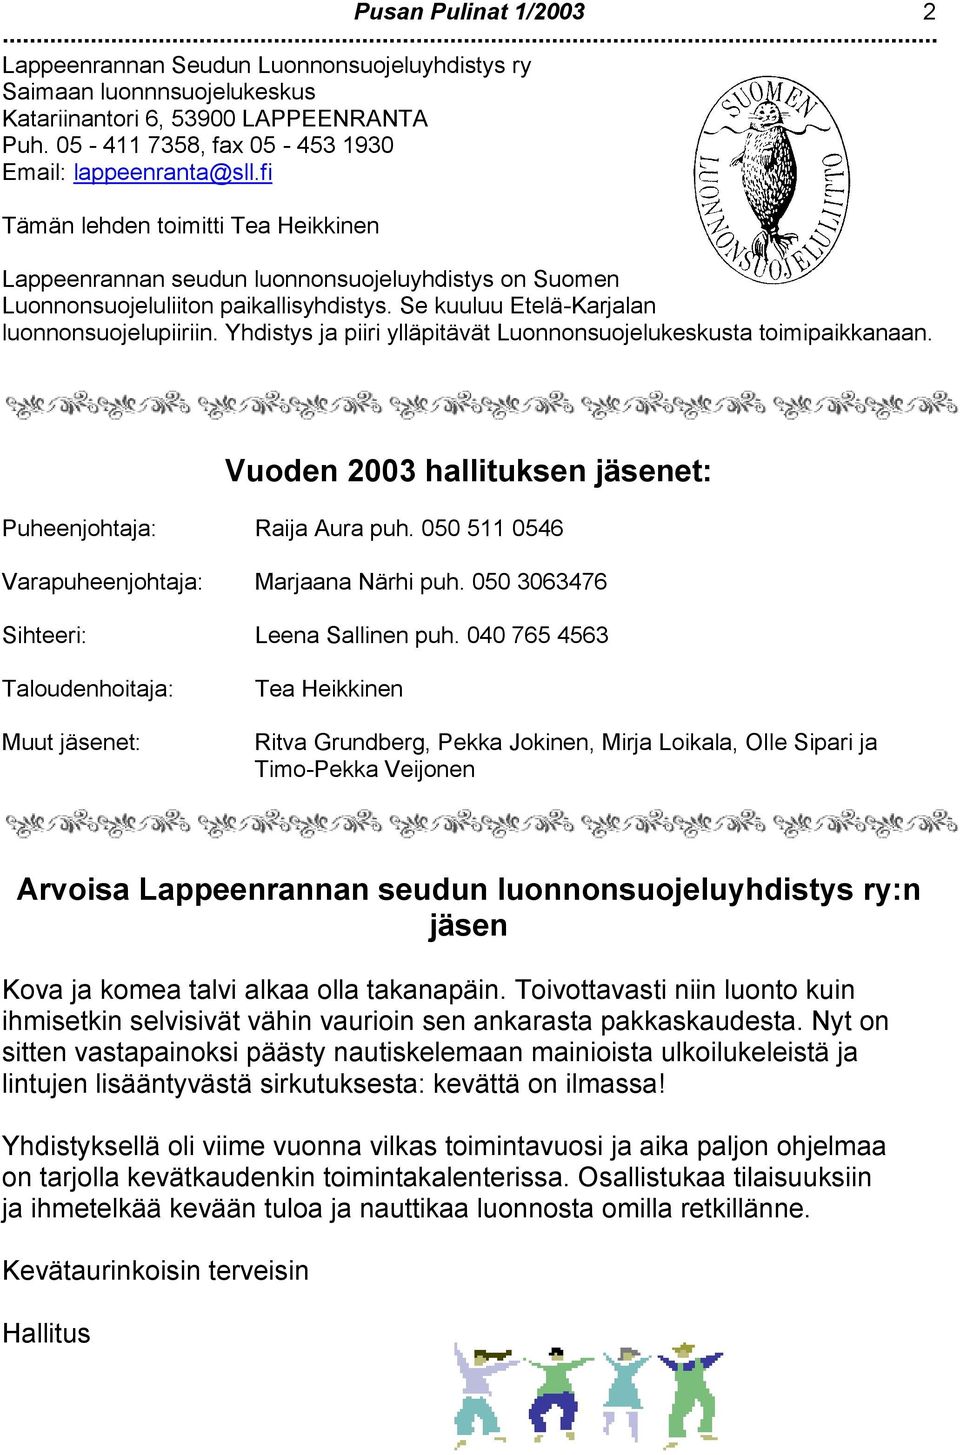 Yhdistys ja piiri ylläpitävät Lunnnsujelukeskusta timipaikkanaan. Vuden 2003 hallituksen jäsenet: Puheenjhtaja: Raija Aura puh. 050 511 0546 Varapuheenjhtaja: Marjaana Närhi puh.